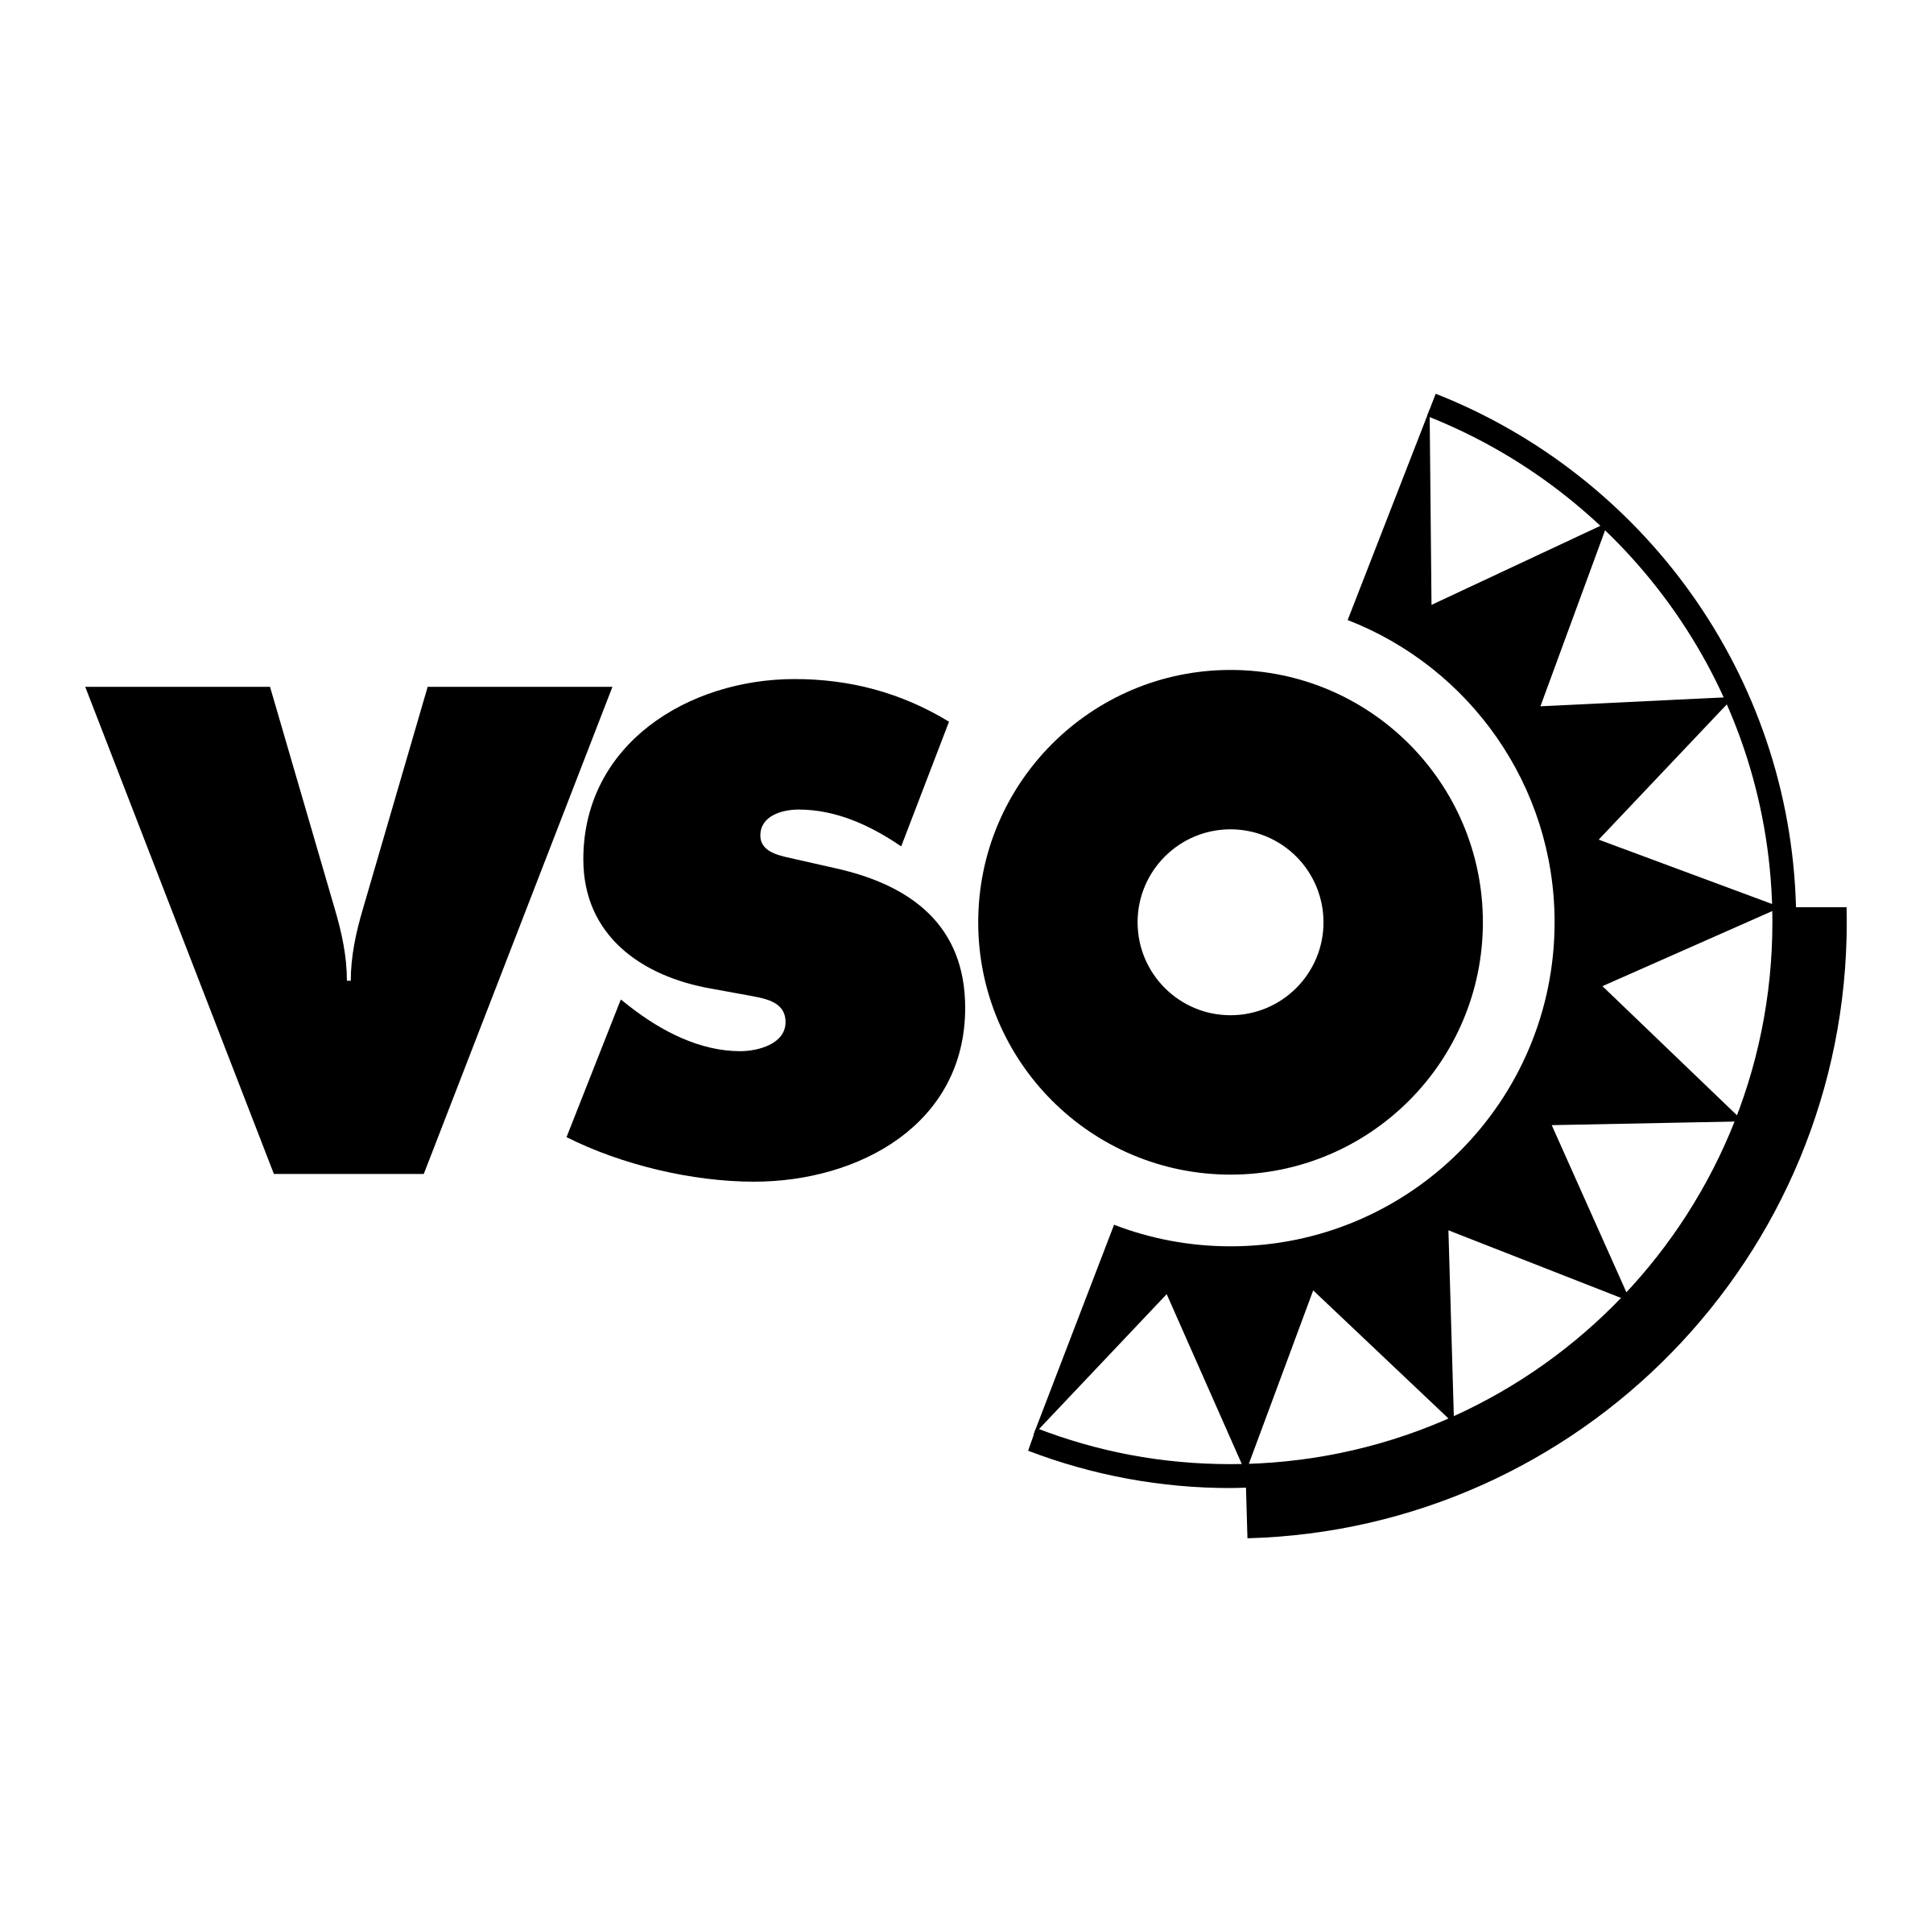 VSO Logo - VSO Logo PNG Transparent & SVG Vector - Freebie Supply